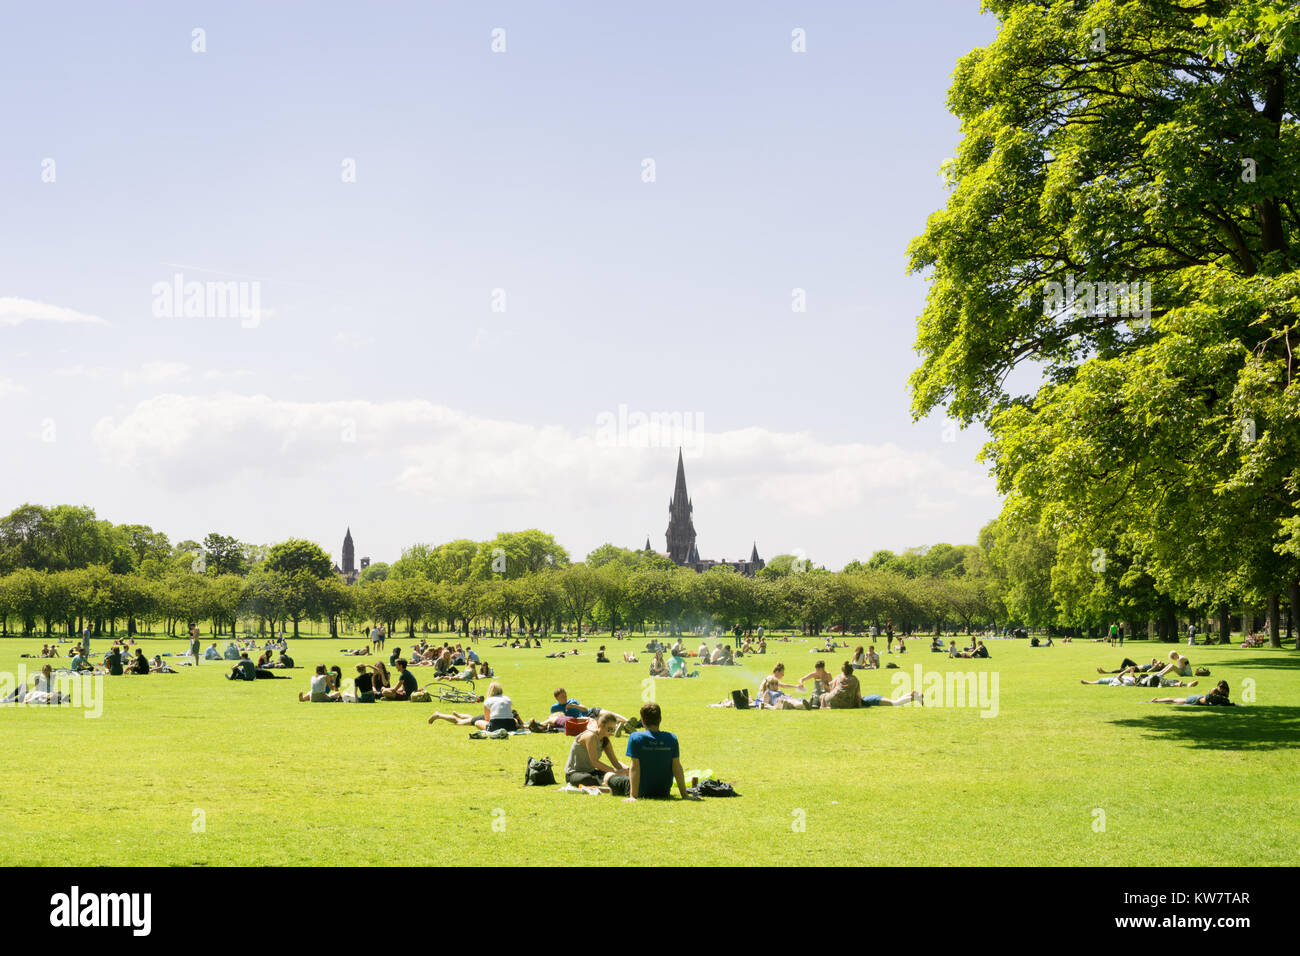 Jugendliche, Studenten von der Universität Edinburgh genießen Sie einen sonnigen Tag im Park, Edinburgh, Schottland, Großbritannien, Sonnenbaden und Grillen Stockfoto